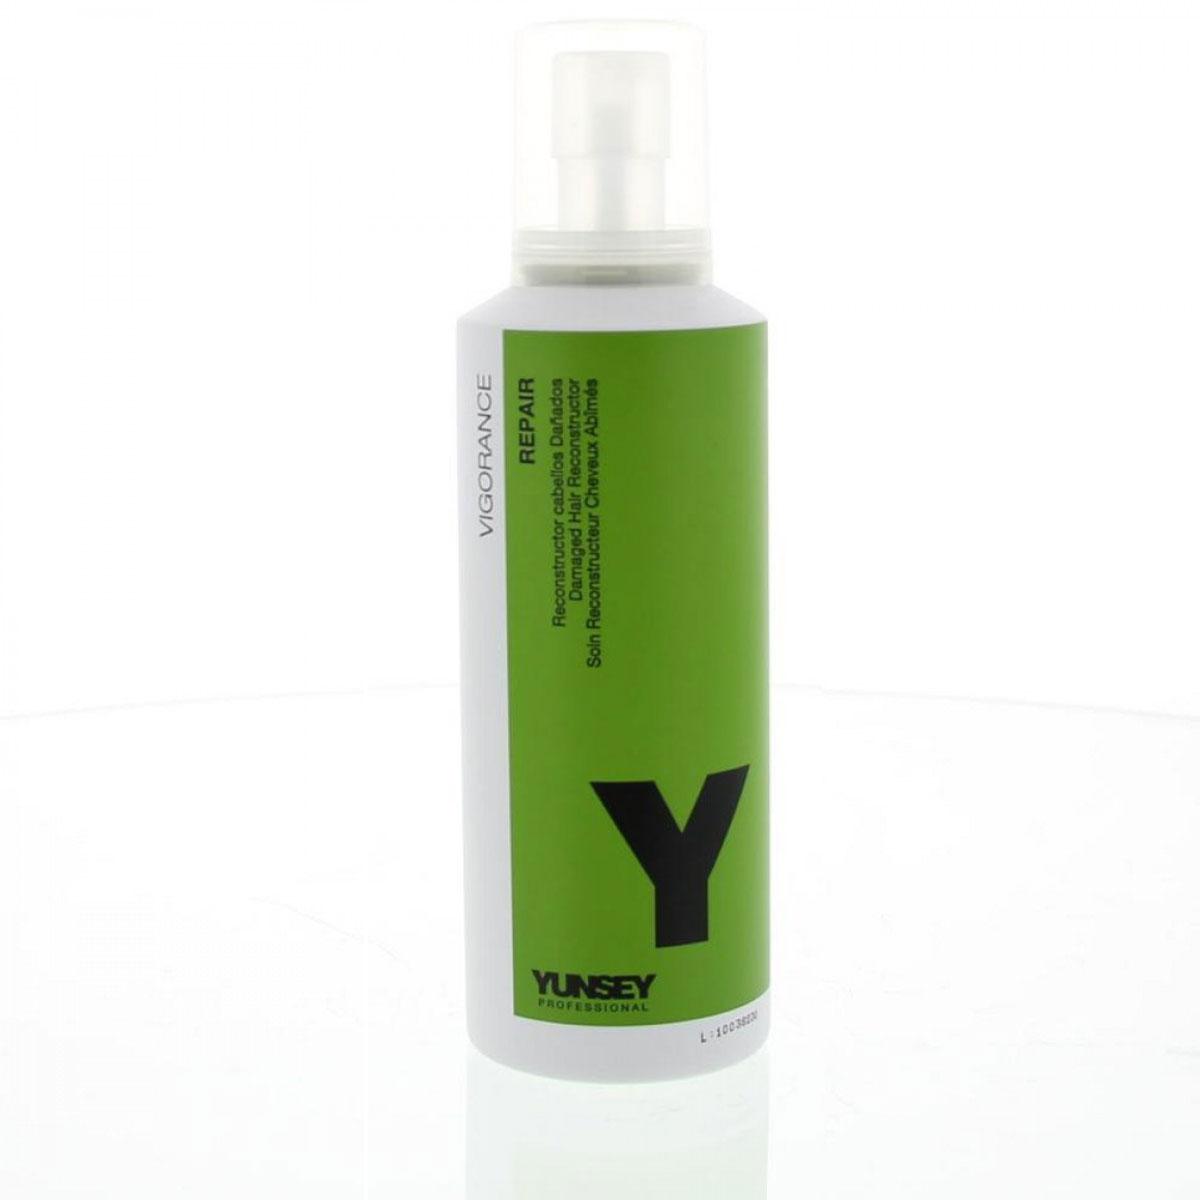 کرم احیاء کننده و ترمیم کننده موهای آسیب دیده  - Yunsey Vigorance Repair Damaged Hair Reconstructor Cream